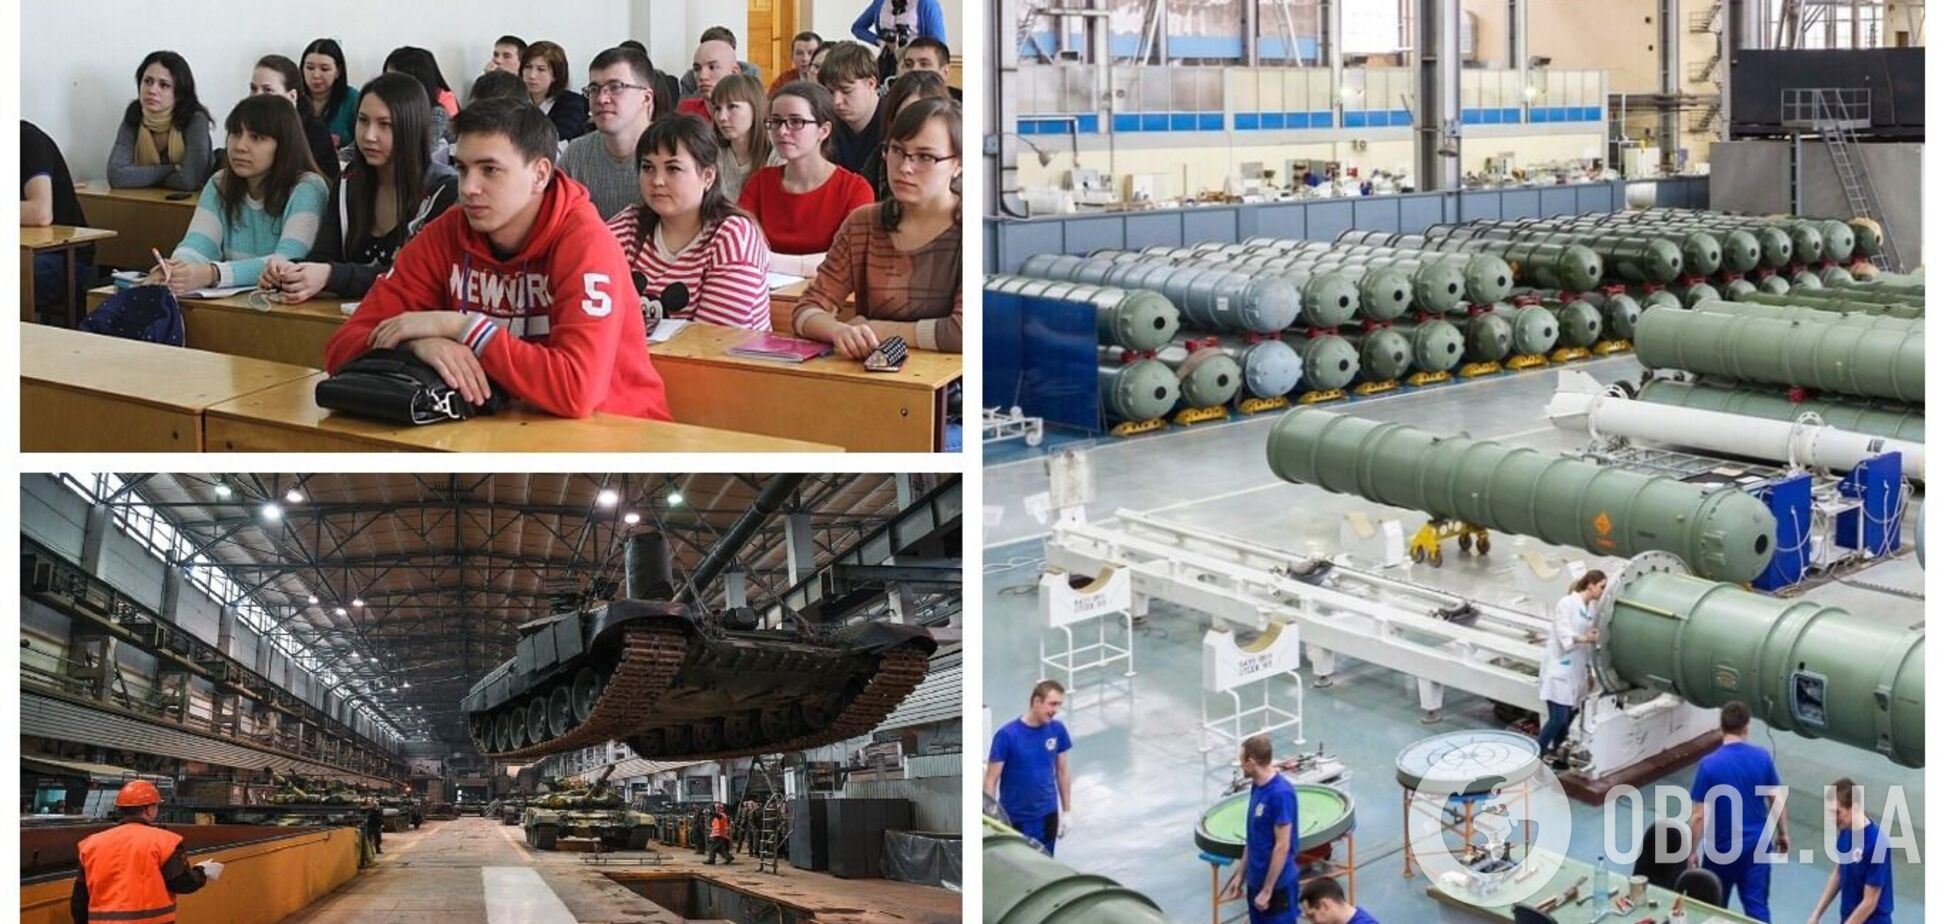 В России студентов хотят заставить работать на оборонных заводах: СМИ раскрыли подробности